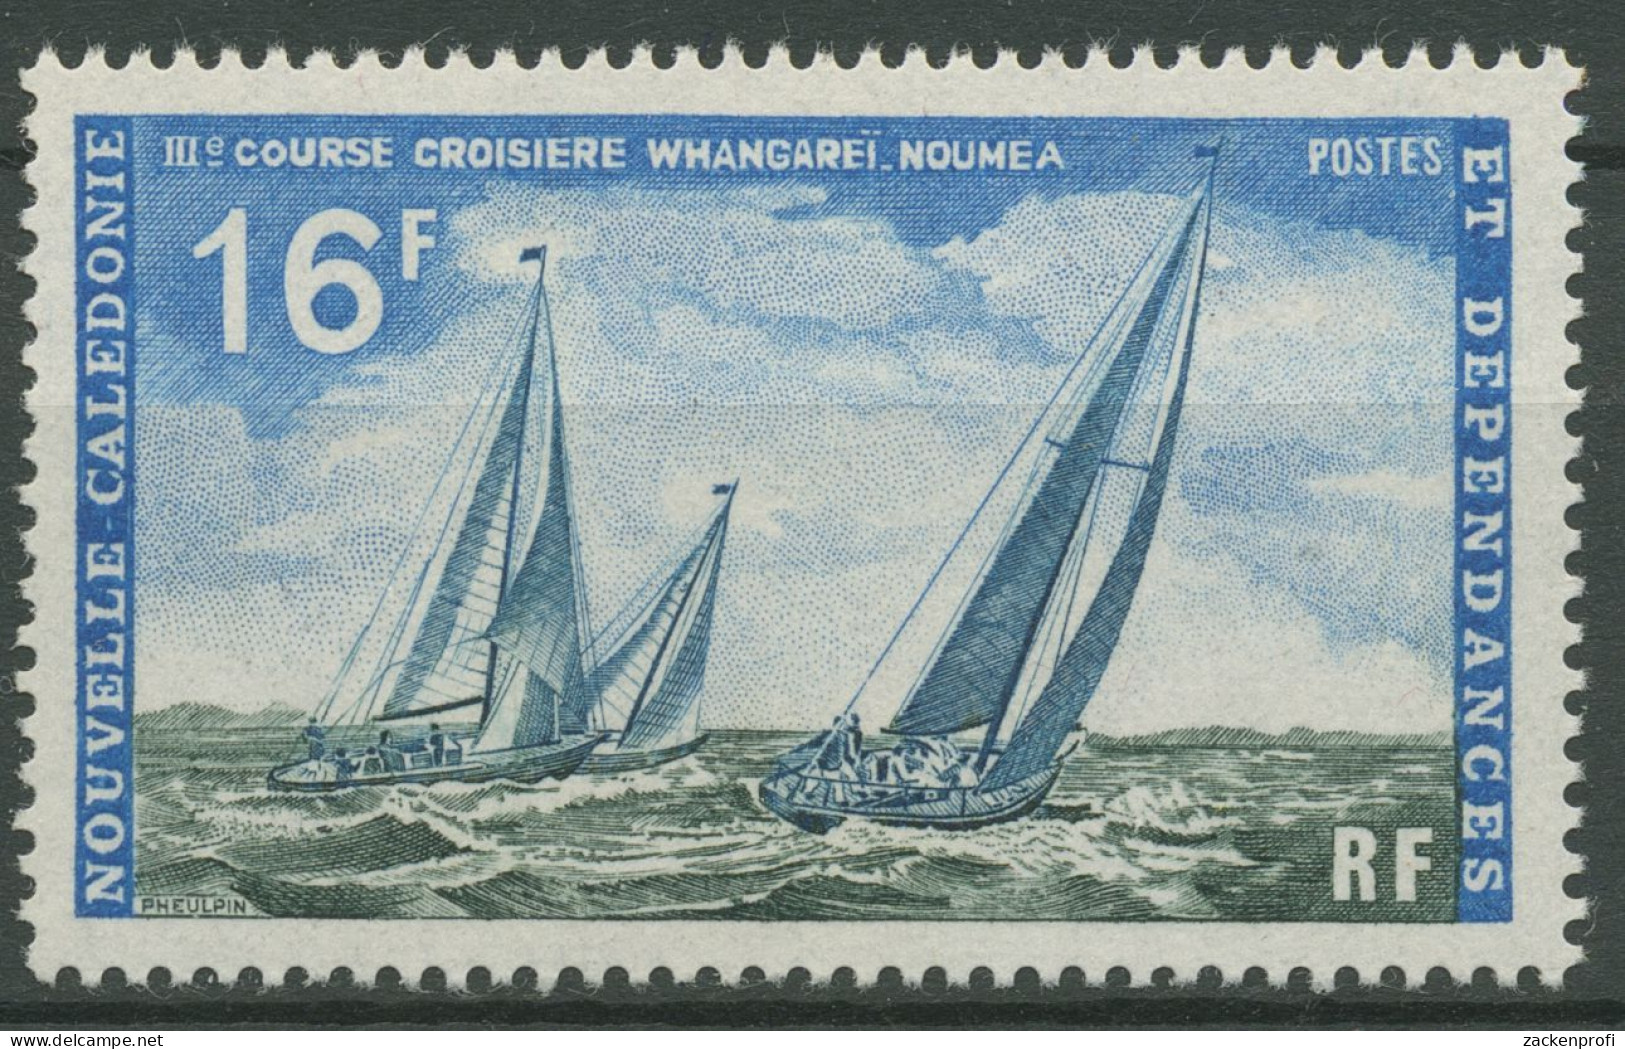 Neukaledonien 1971 Hochseeregatta Whangarei-Nouméa 500 Postfrisch - Unused Stamps